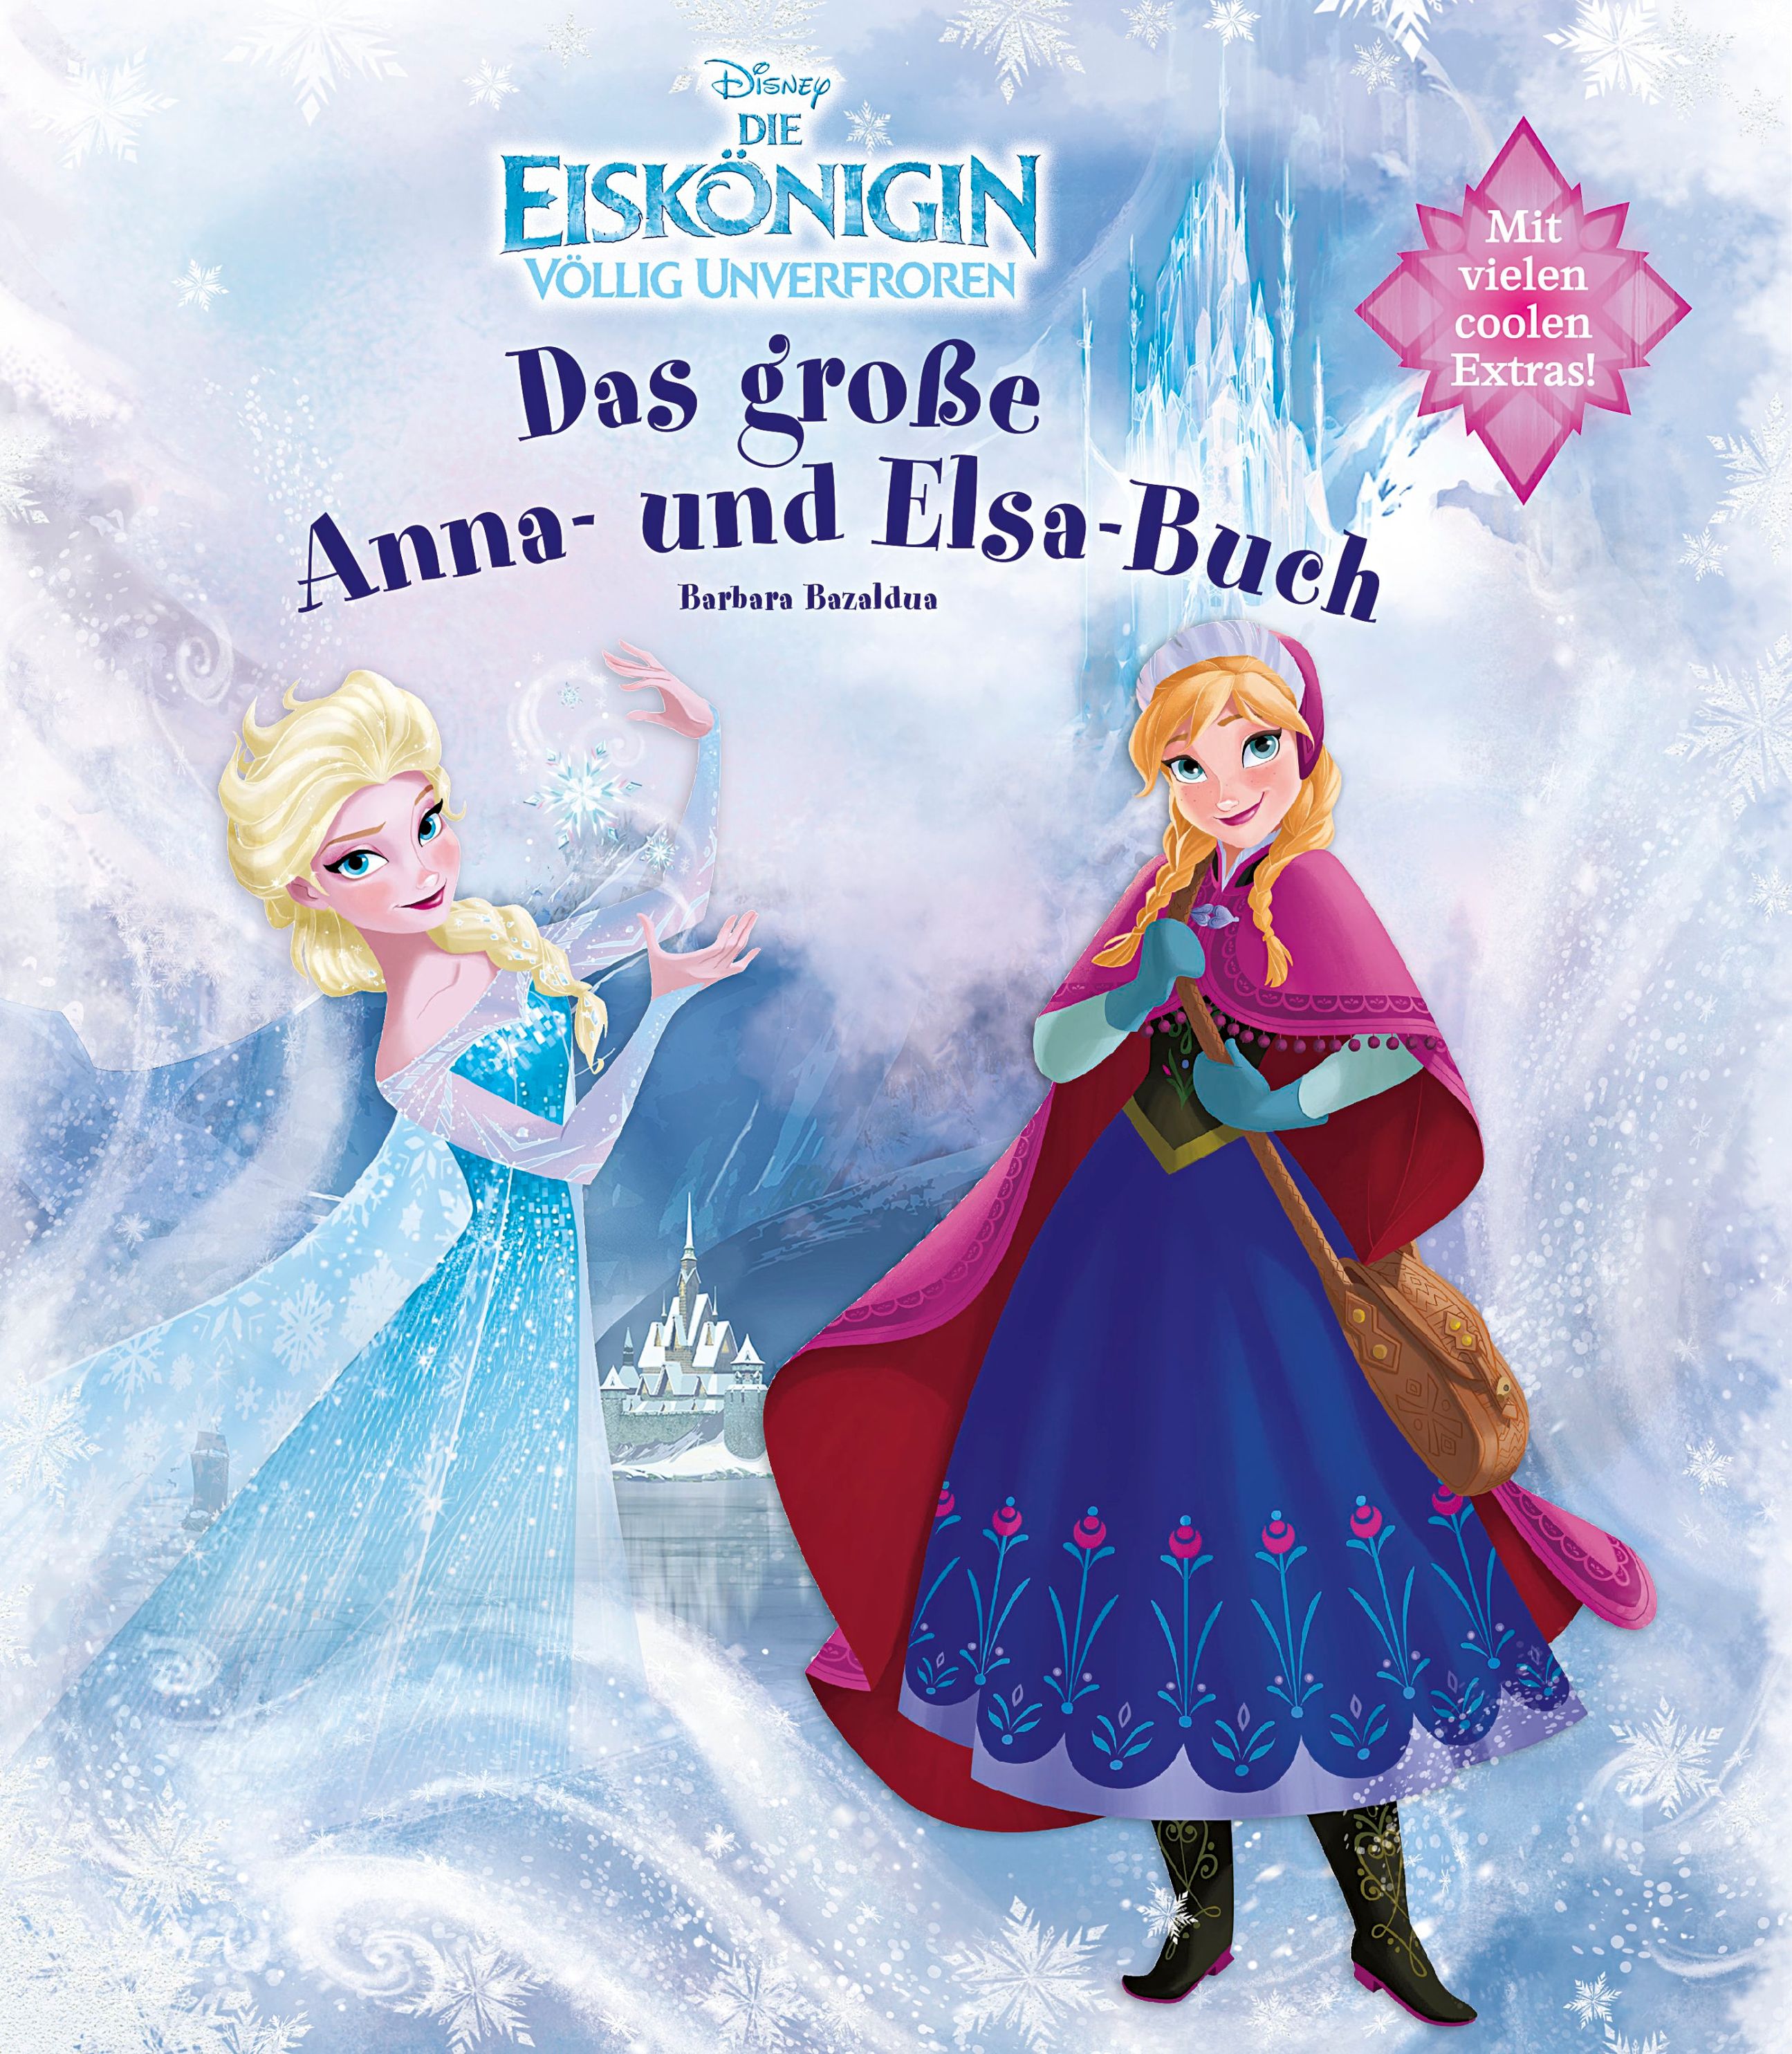 Disney Die Eiskönigin völlig unverfroren: Das große Anna- und Elsa-Buch Buch